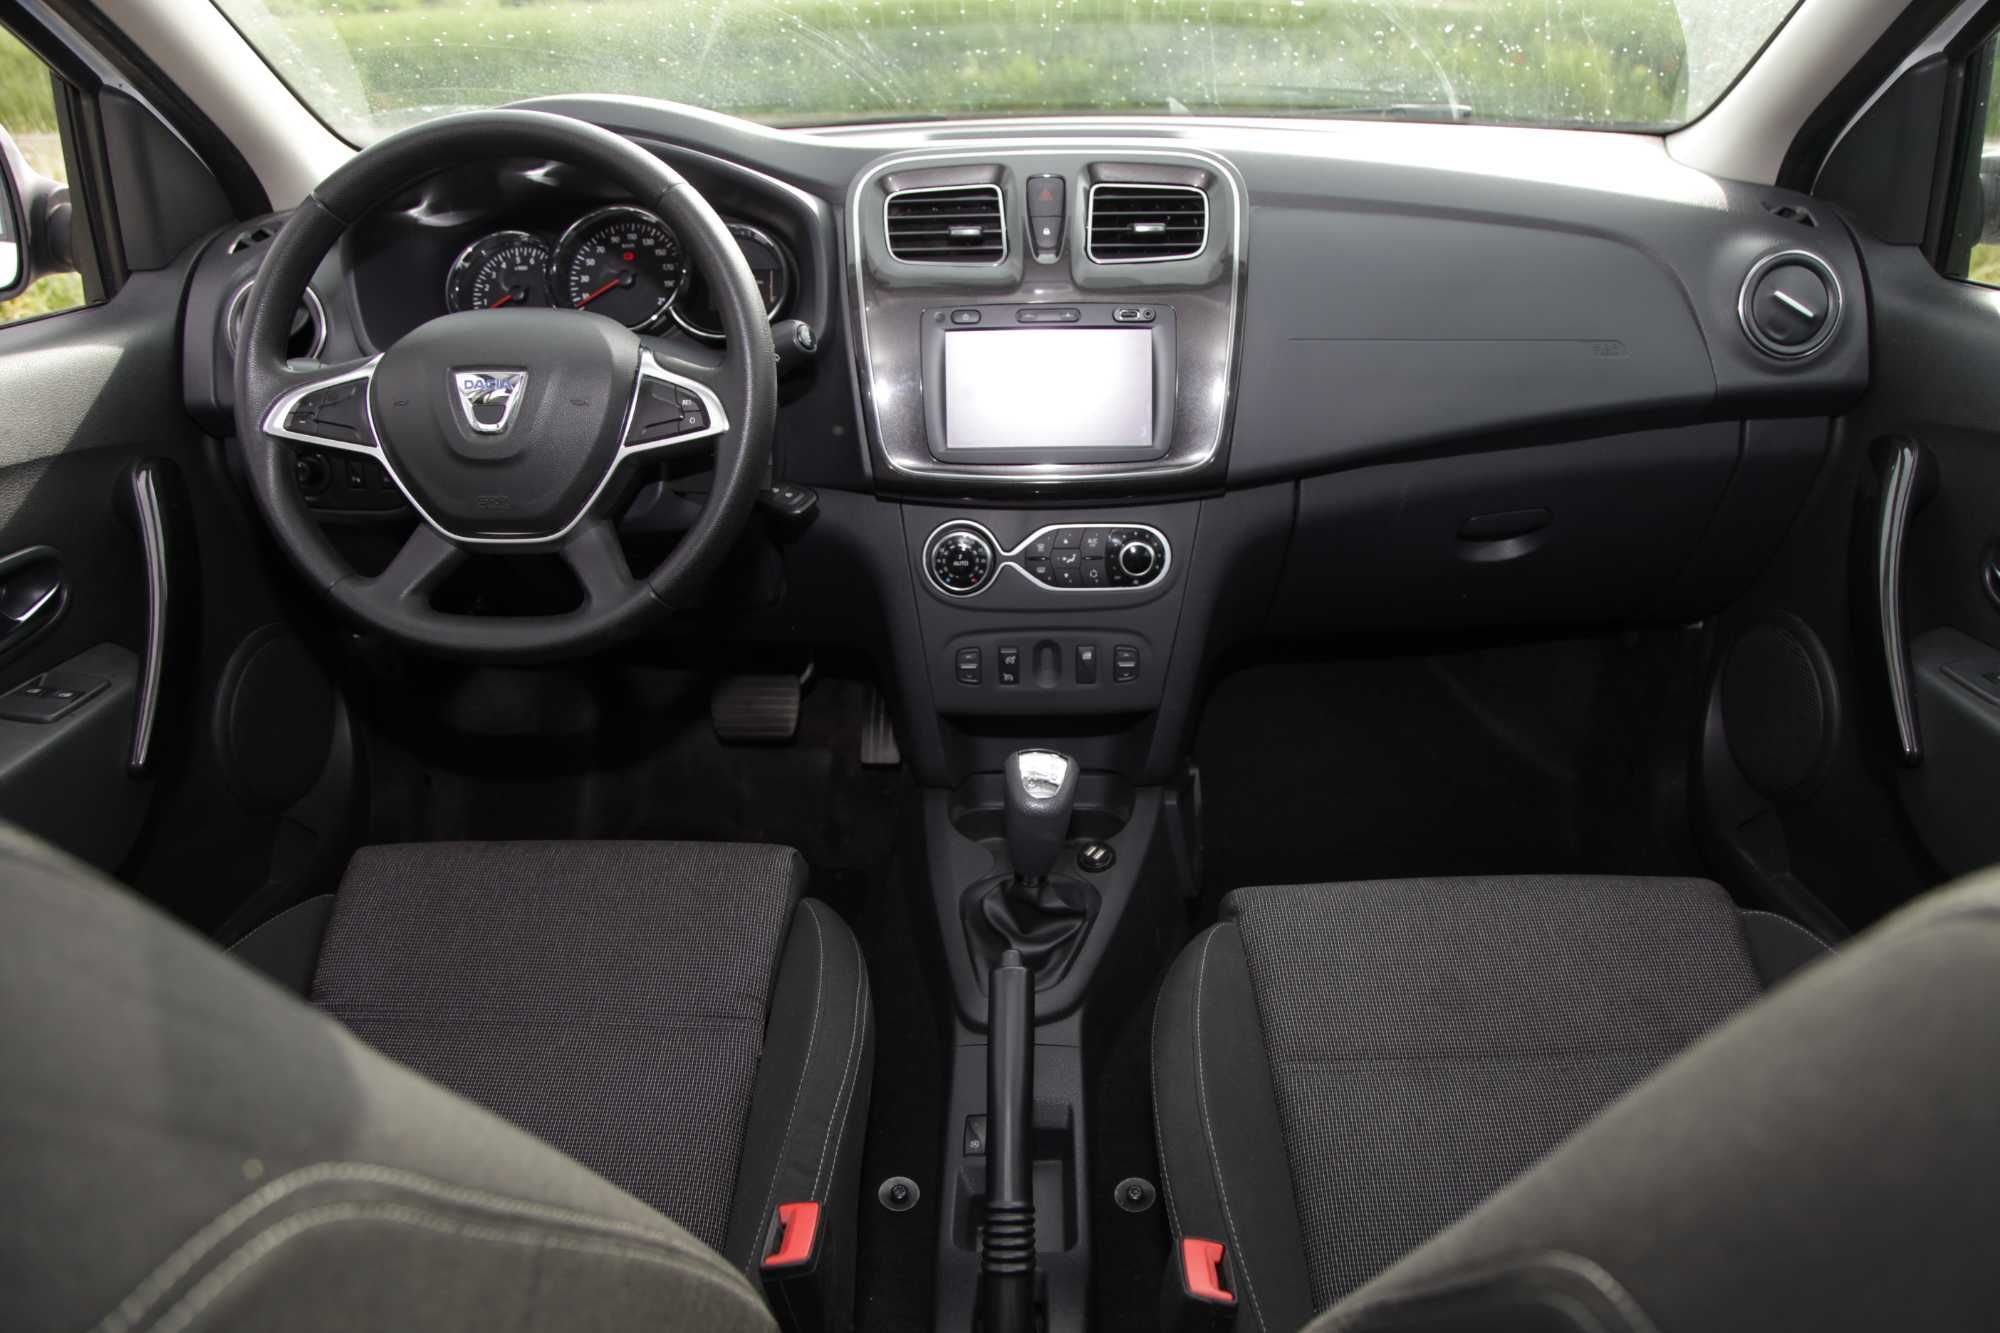 Sistem conversie scaune compatibil VW Passat B8 - Logan Duster Sandero